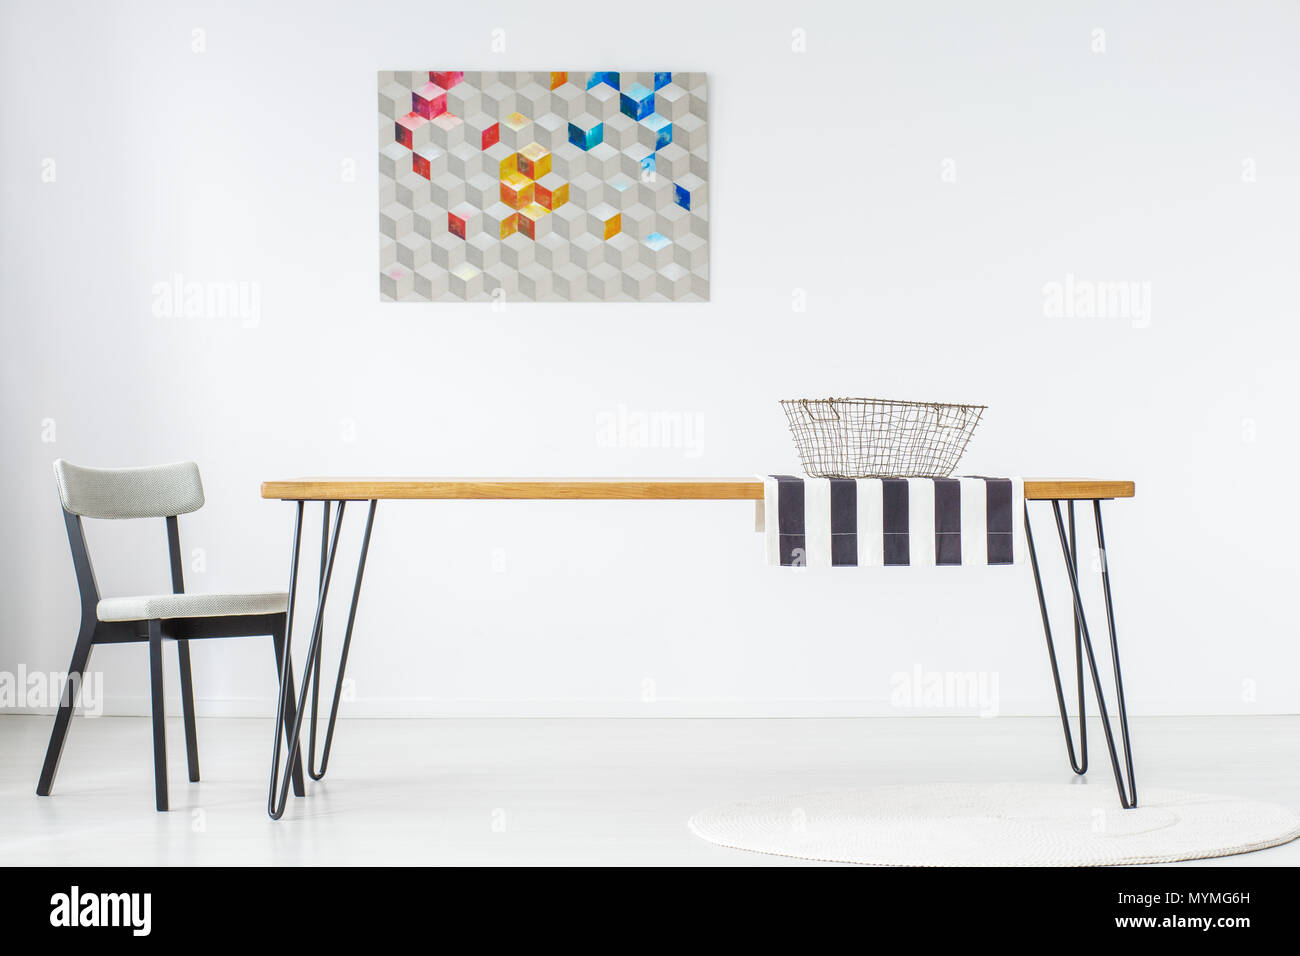 Cartel en la pared blanca y gris silla de comedor con canasta metálica sobre tela a rayas, sobre mesa de madera Foto de stock